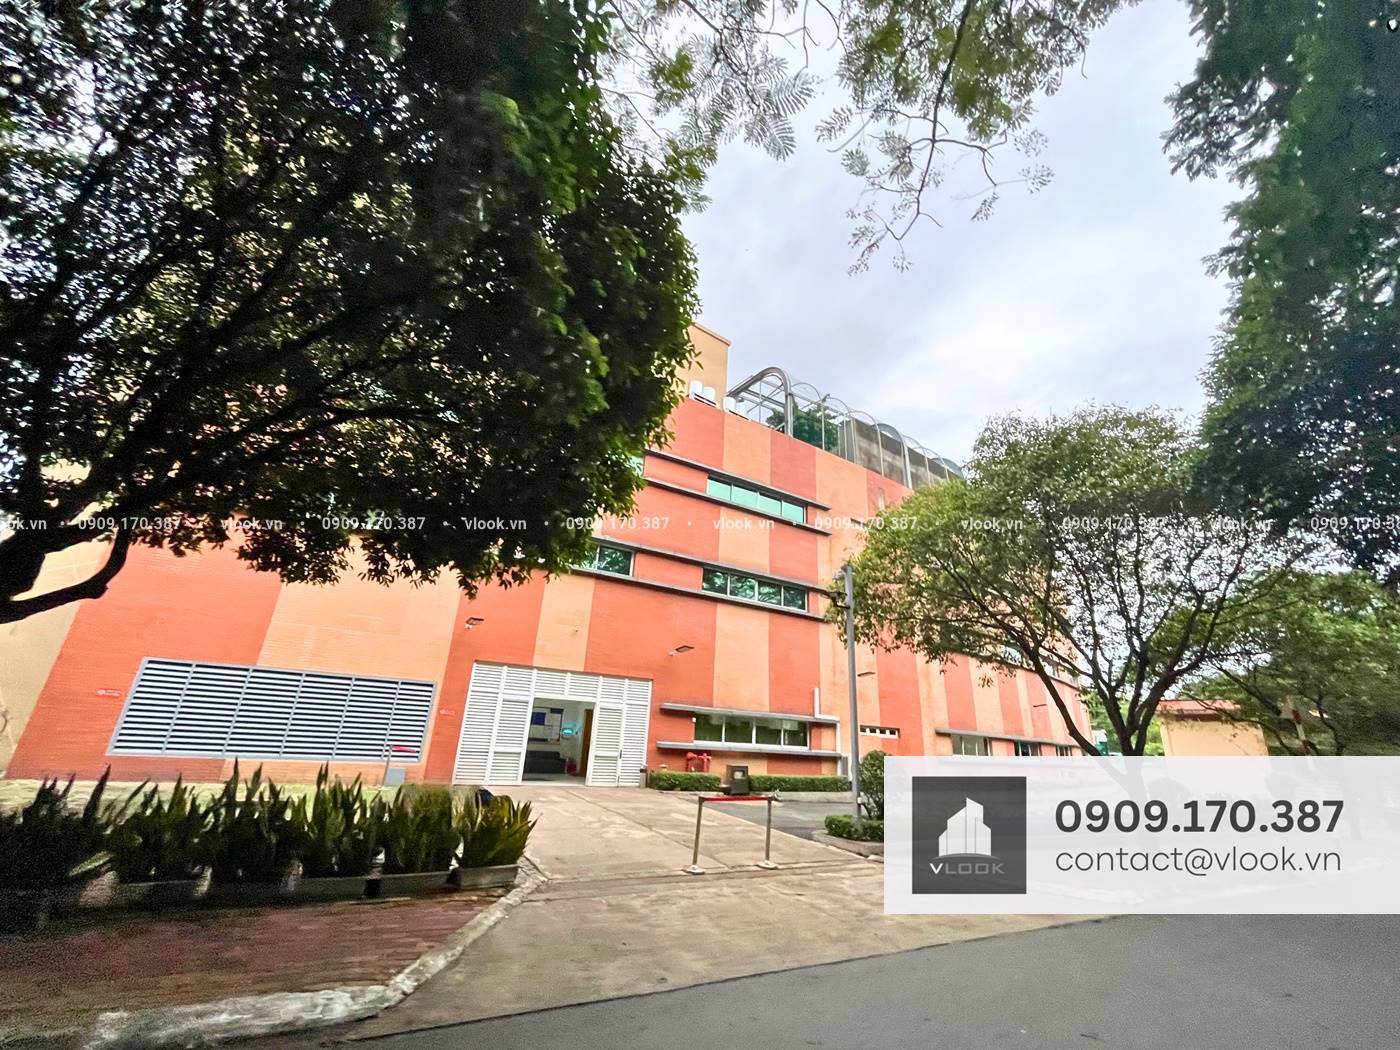 Cao ốc văn phòng cho thuê tòa nhà SMS Tower, Công viên phần mềm Quang Trung, Quận 12, TPHCM - vlook.vn - 0909 170 387